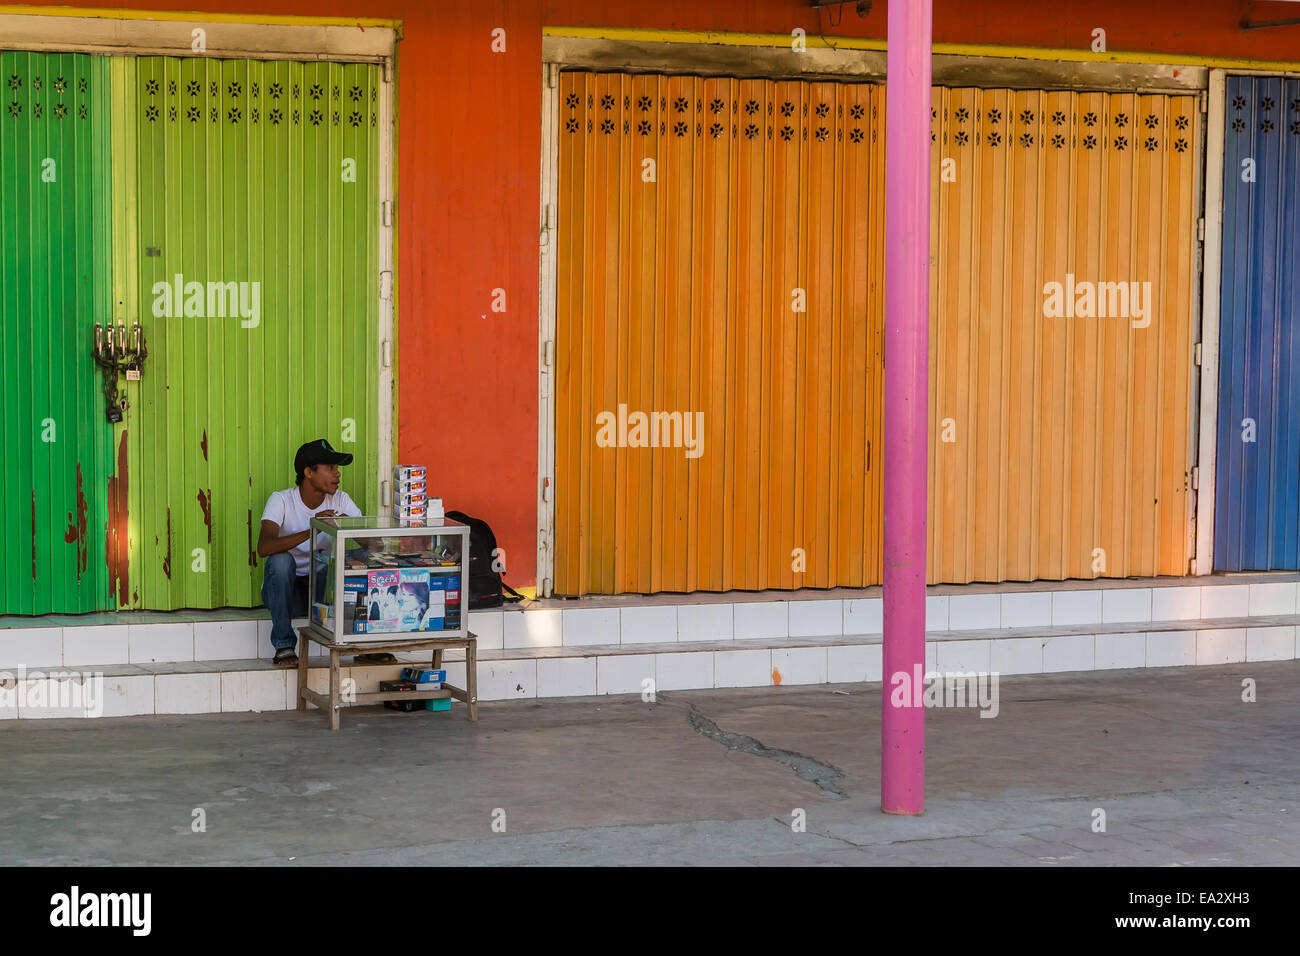 L'uomo la vendita di componenti elettronici dal carrello di piccole dimensioni nella capitale Dili, Timor orientale, Asia sud-orientale, Asia Foto Stock